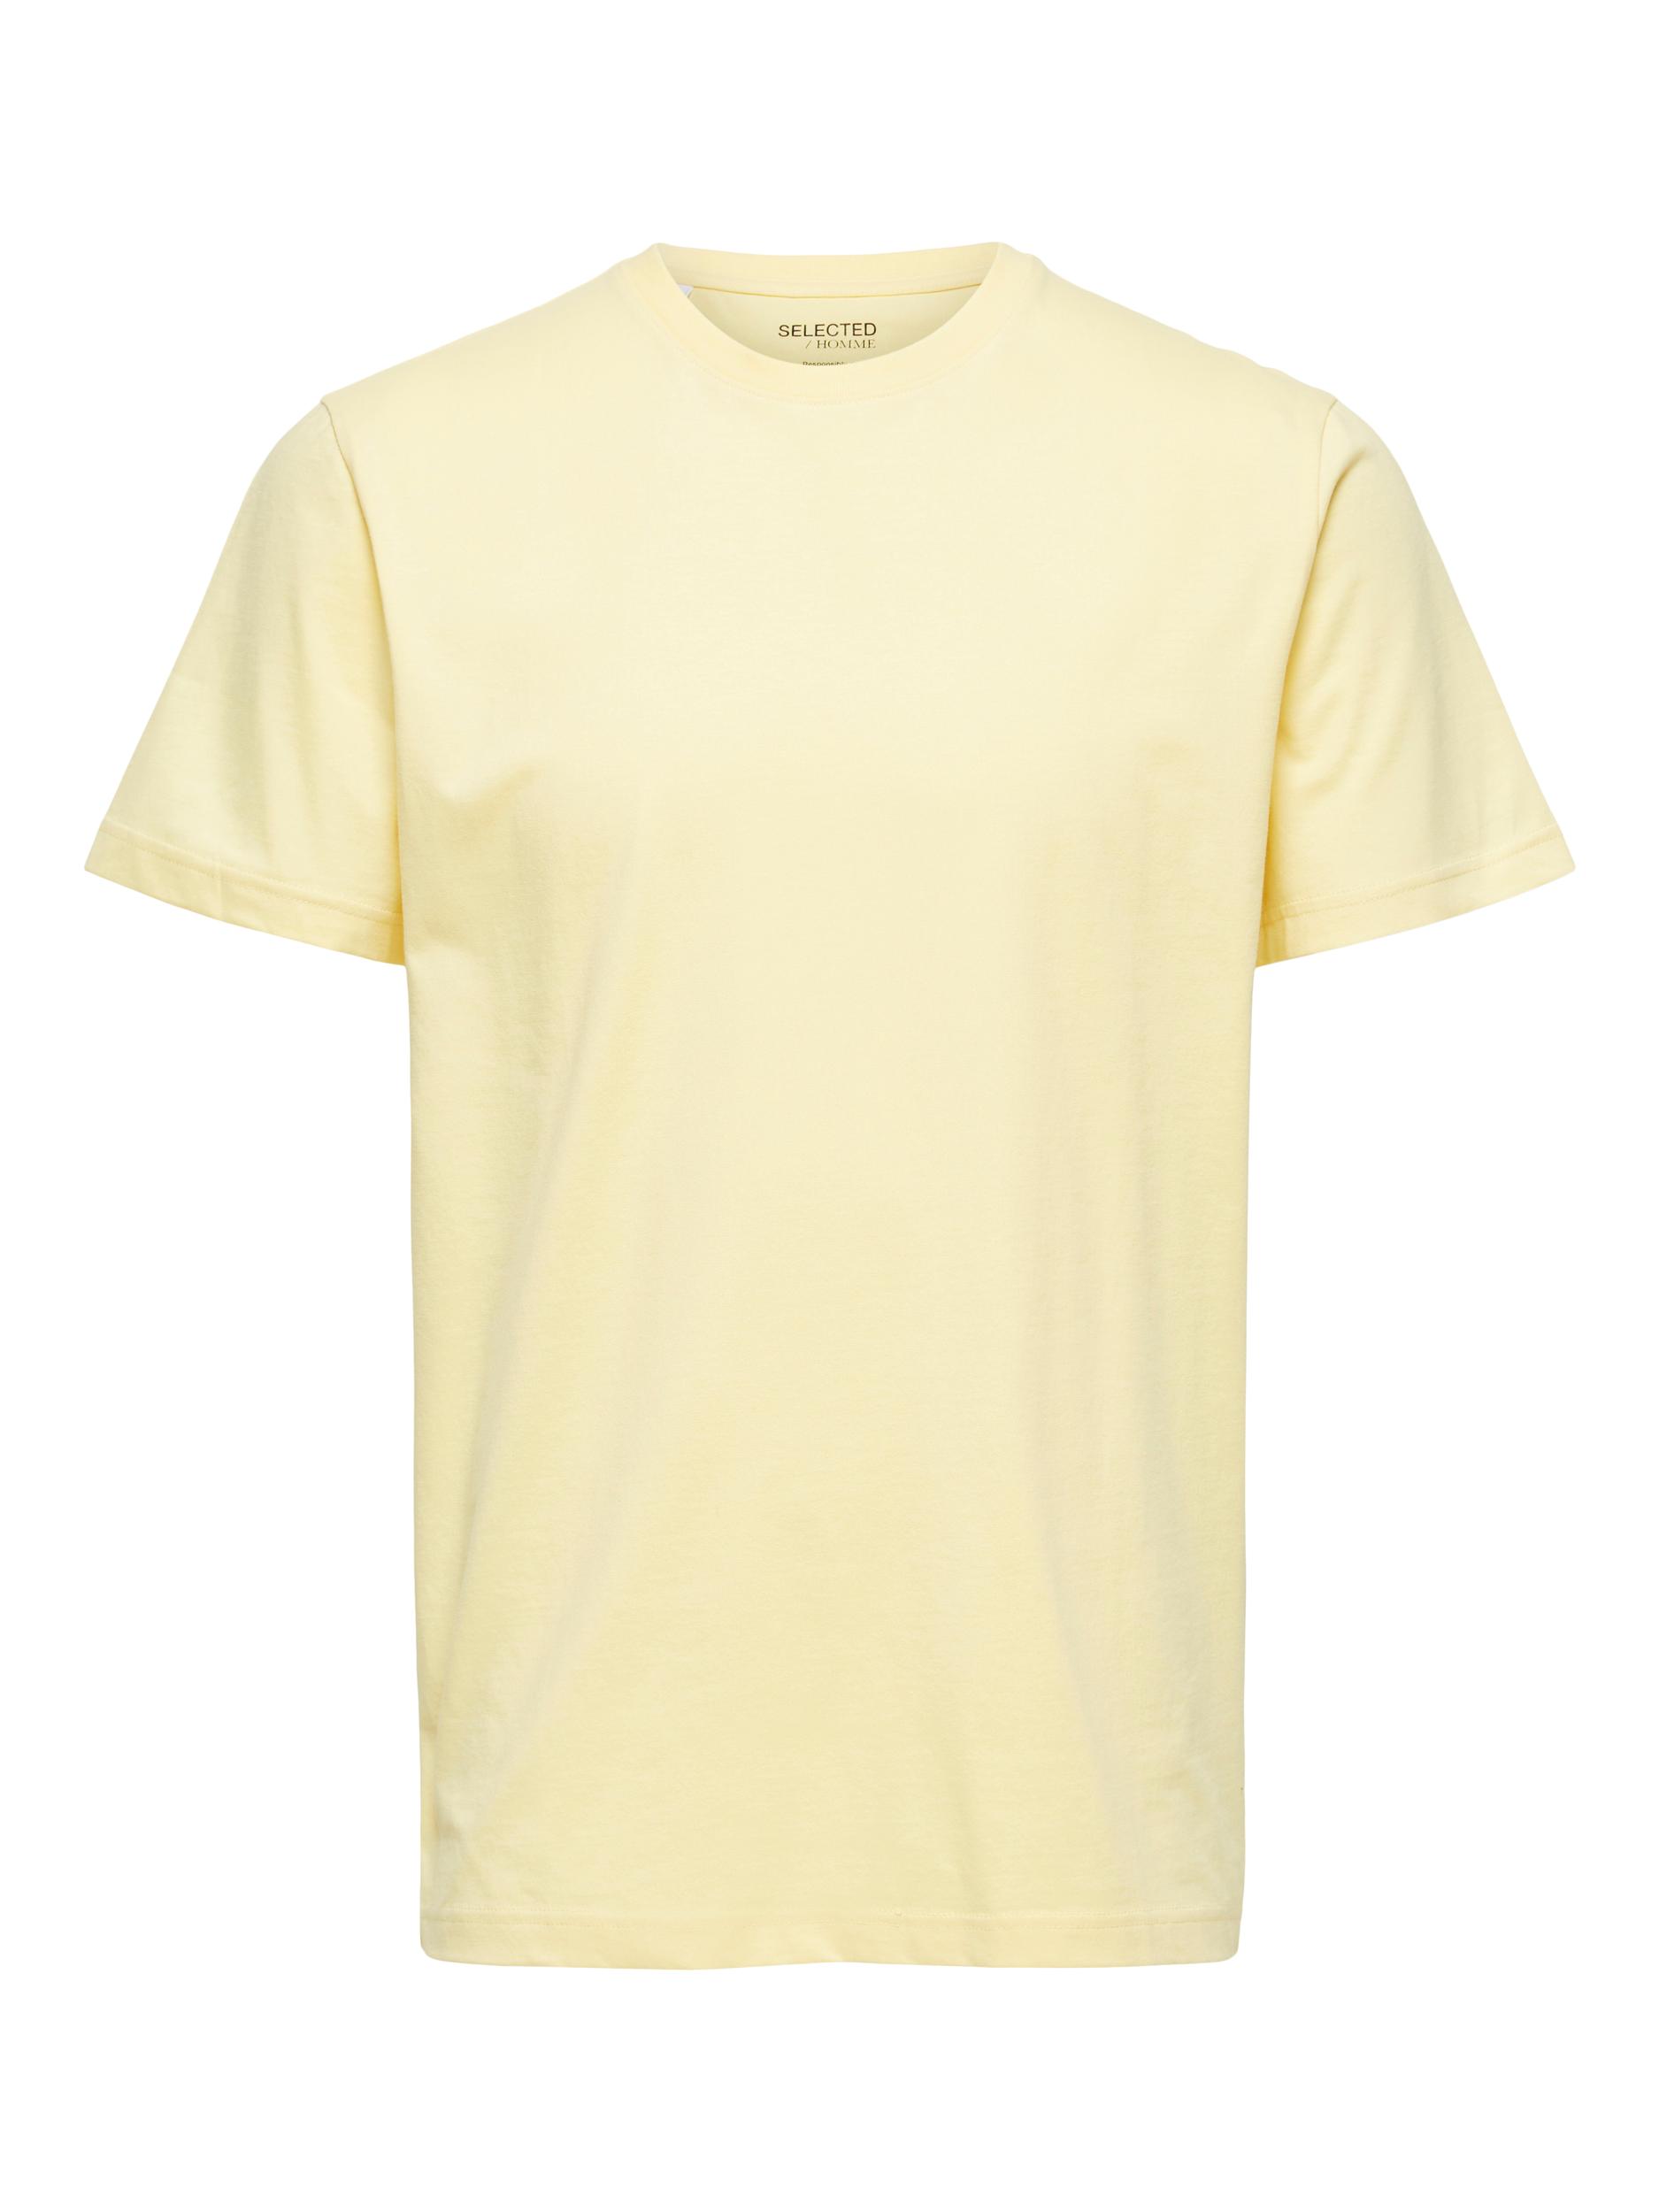  Norman T-shirt, Sunlight, XXL